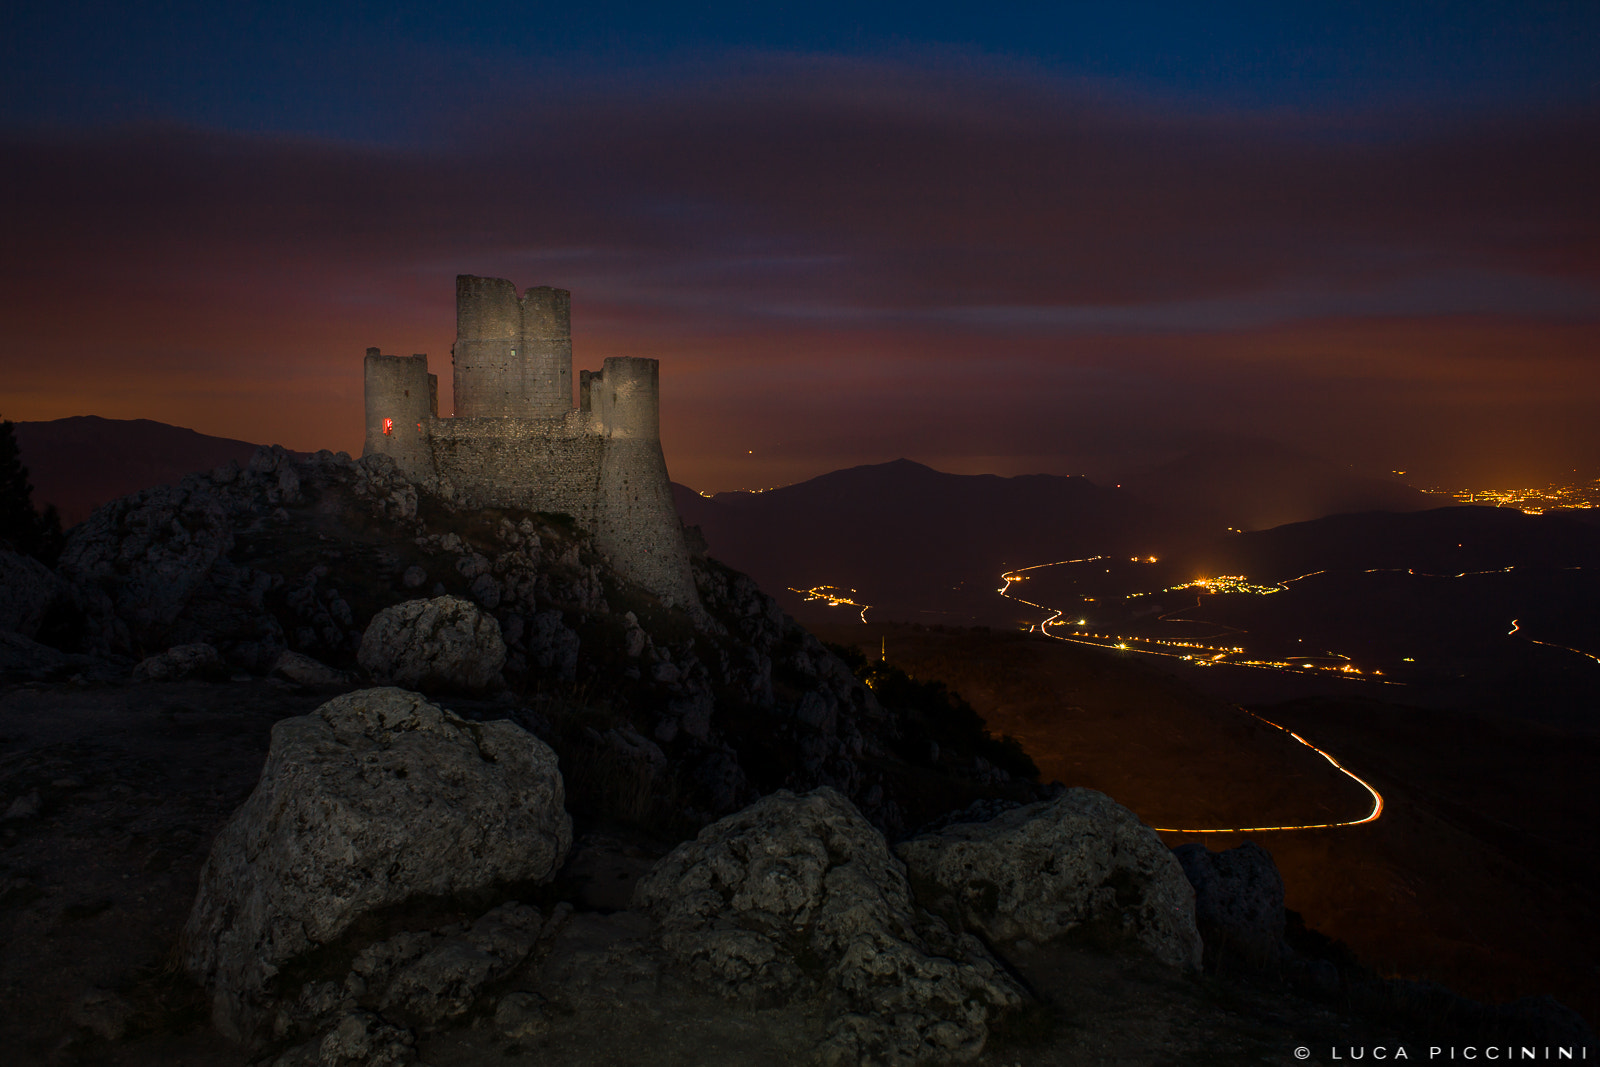 Canon EOS 5D sample photo. Rocca calasio castle photography